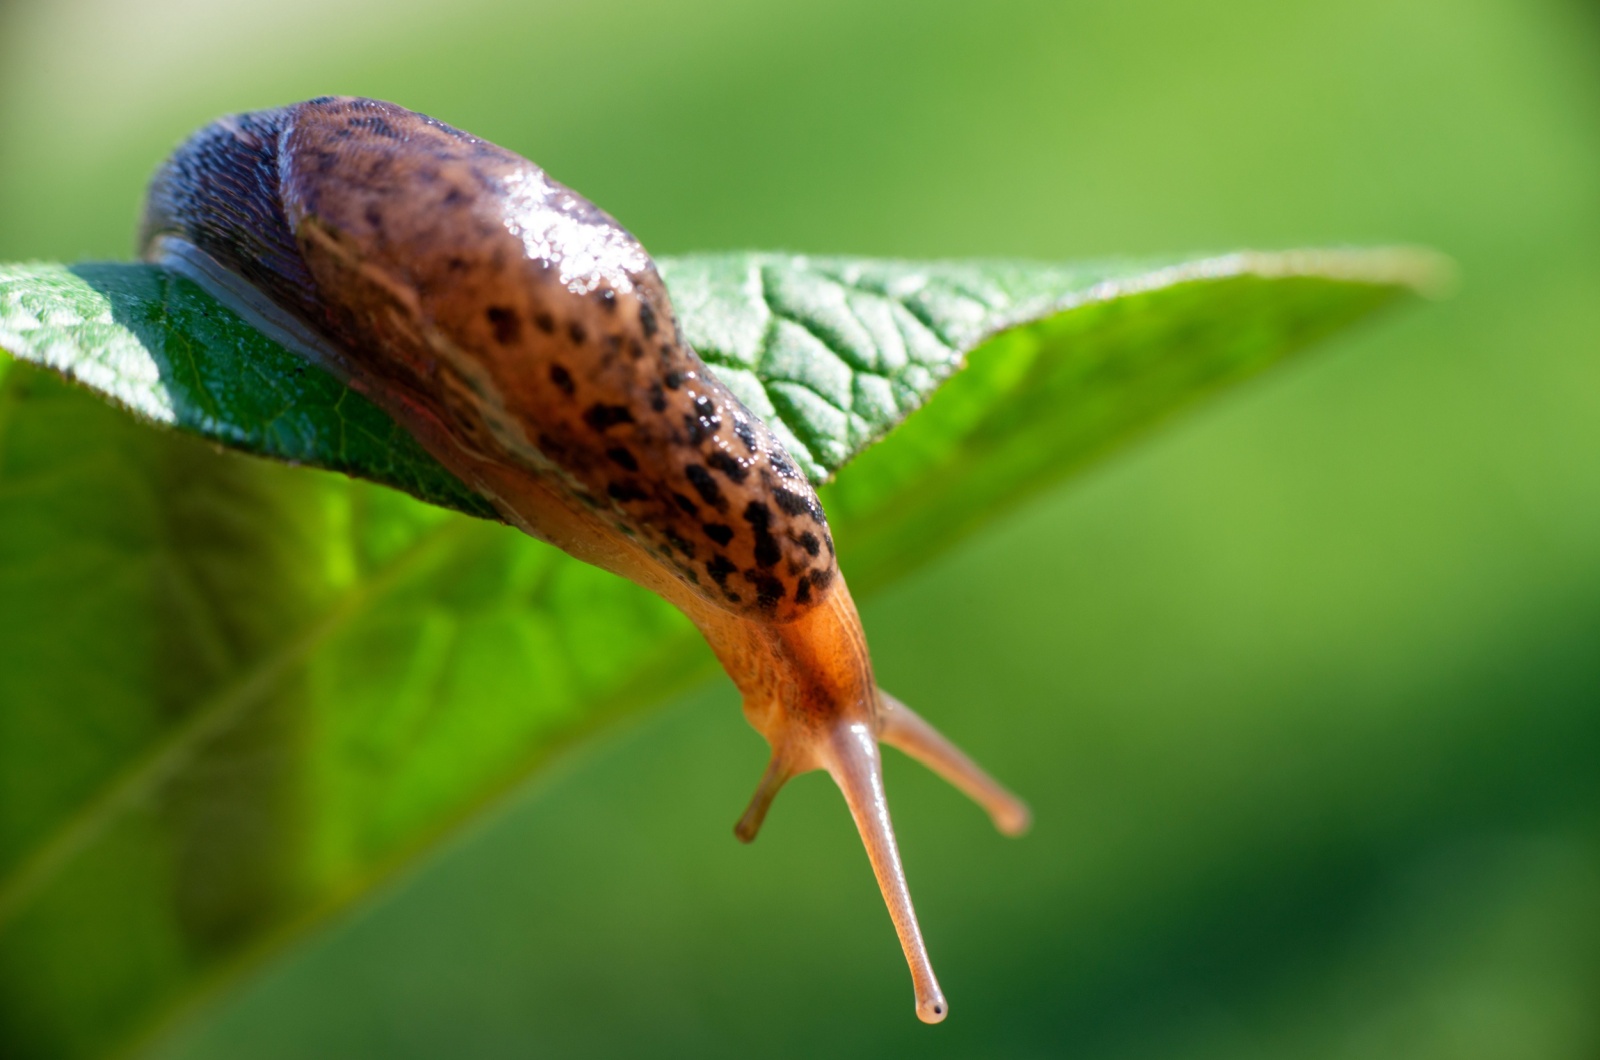 leopard slug on a leaf